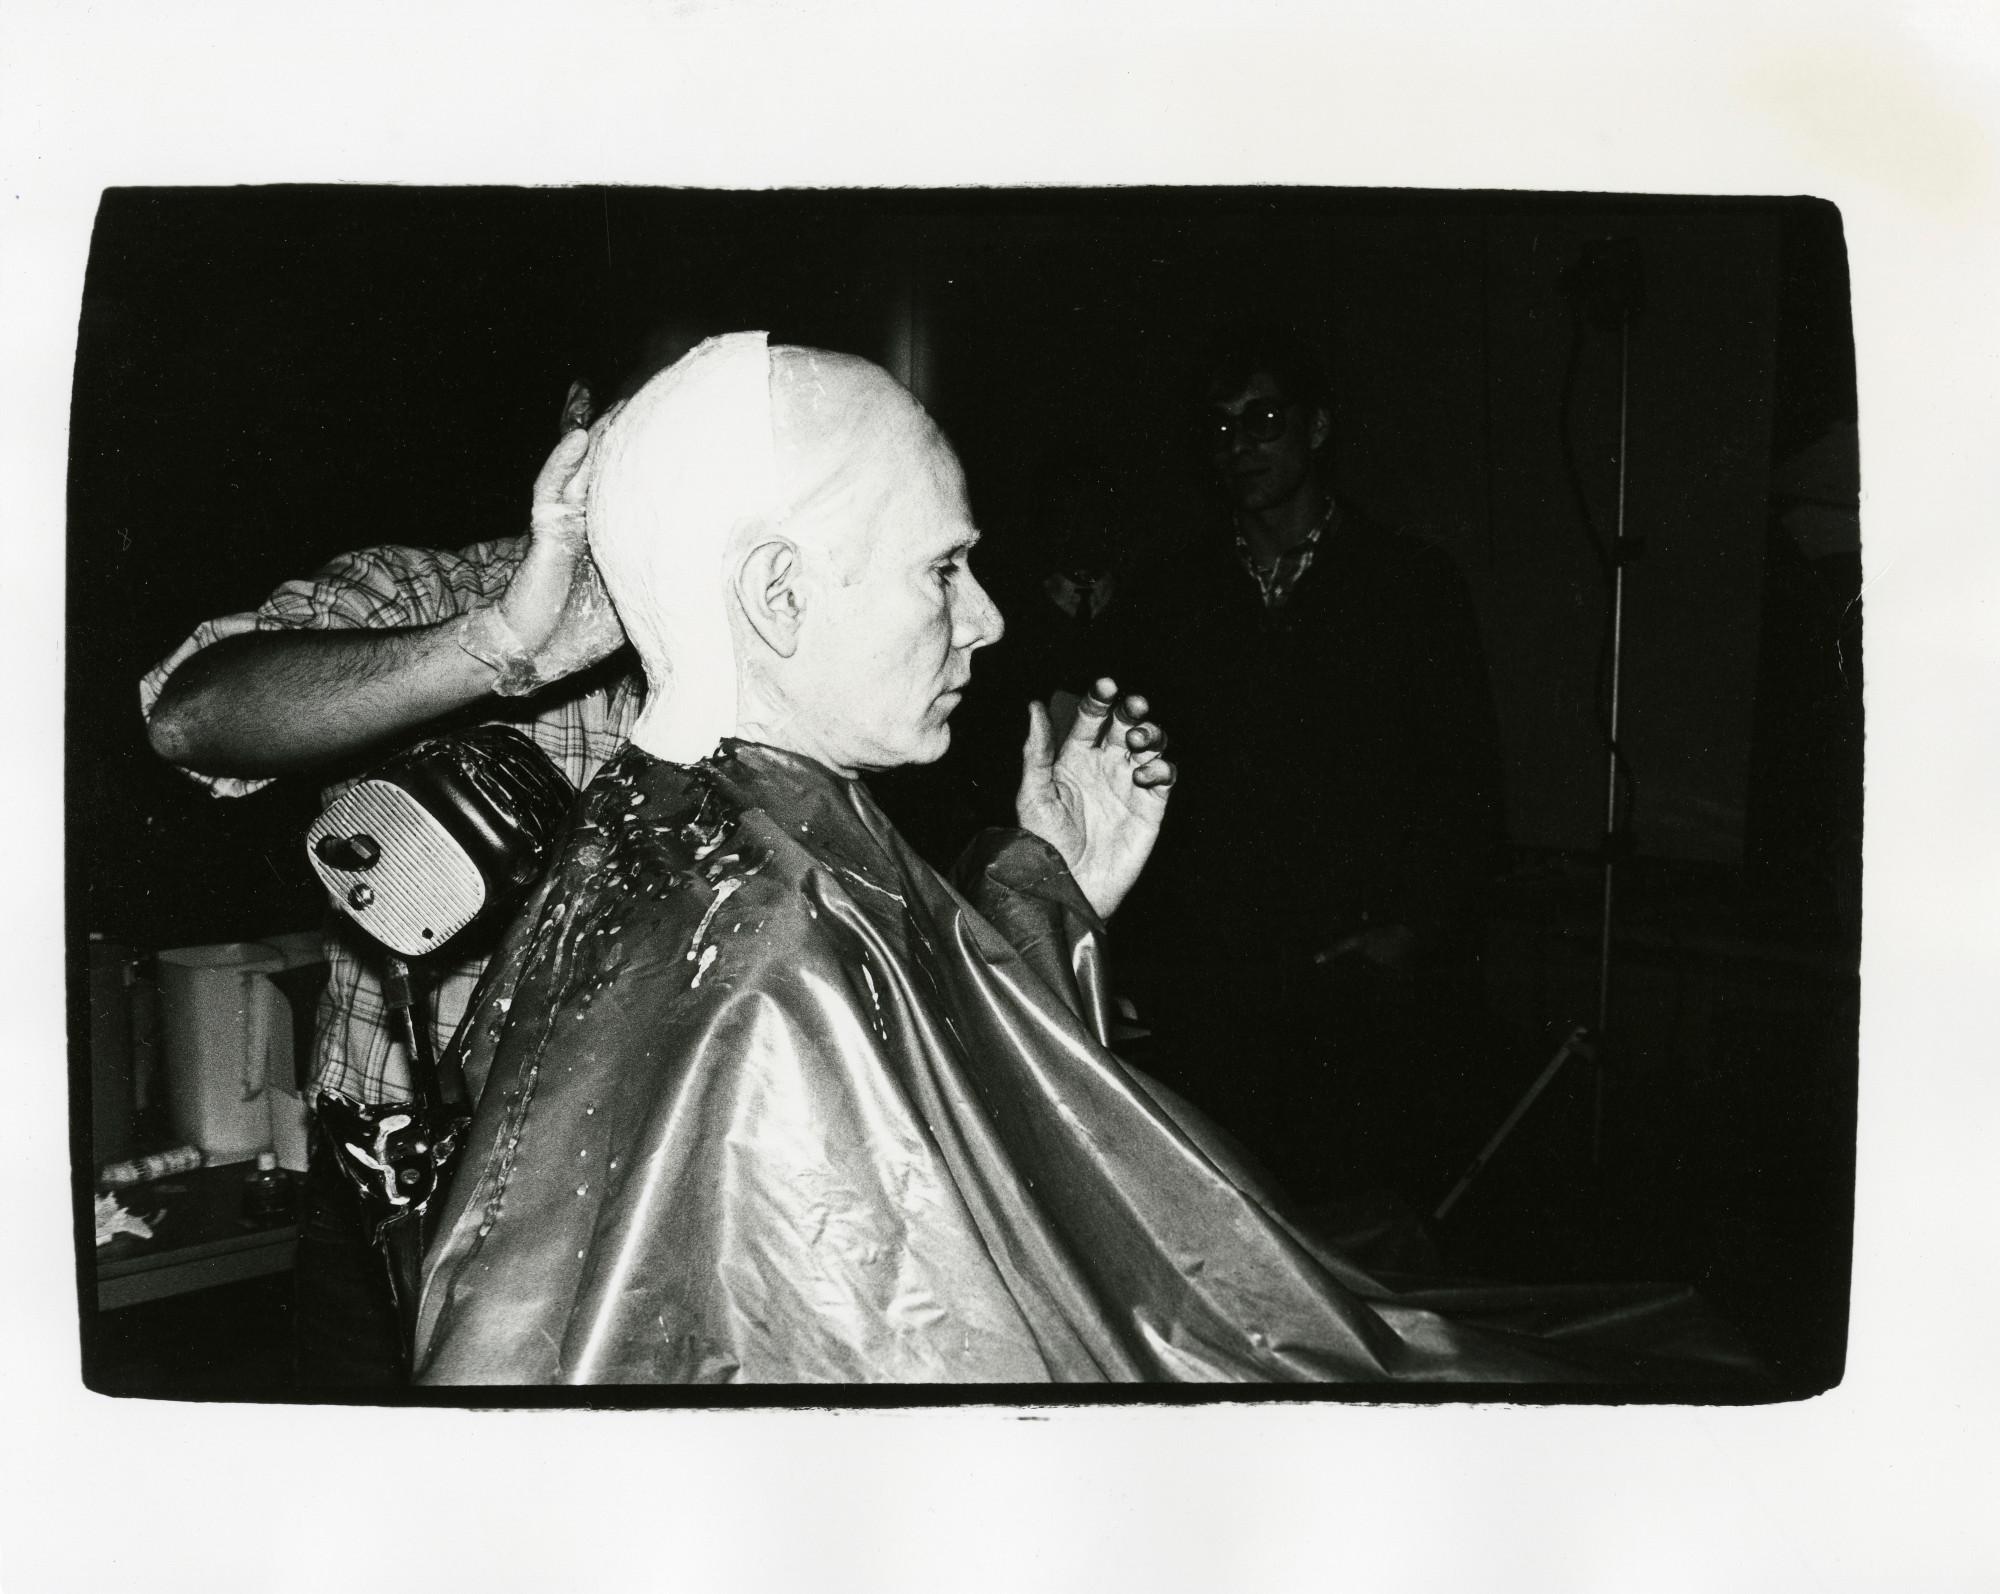 Il s'agit d'une œuvre unique.
Daté "Dec 9 1980" (au verso).
Estampillé au verso par The Estate of Andy Warhol et The Andy Warhol Foundation for the Visual Arts. Annoté avec le numéro d'inventaire de la Fondation.
L'œuvre est accompagnée d'un